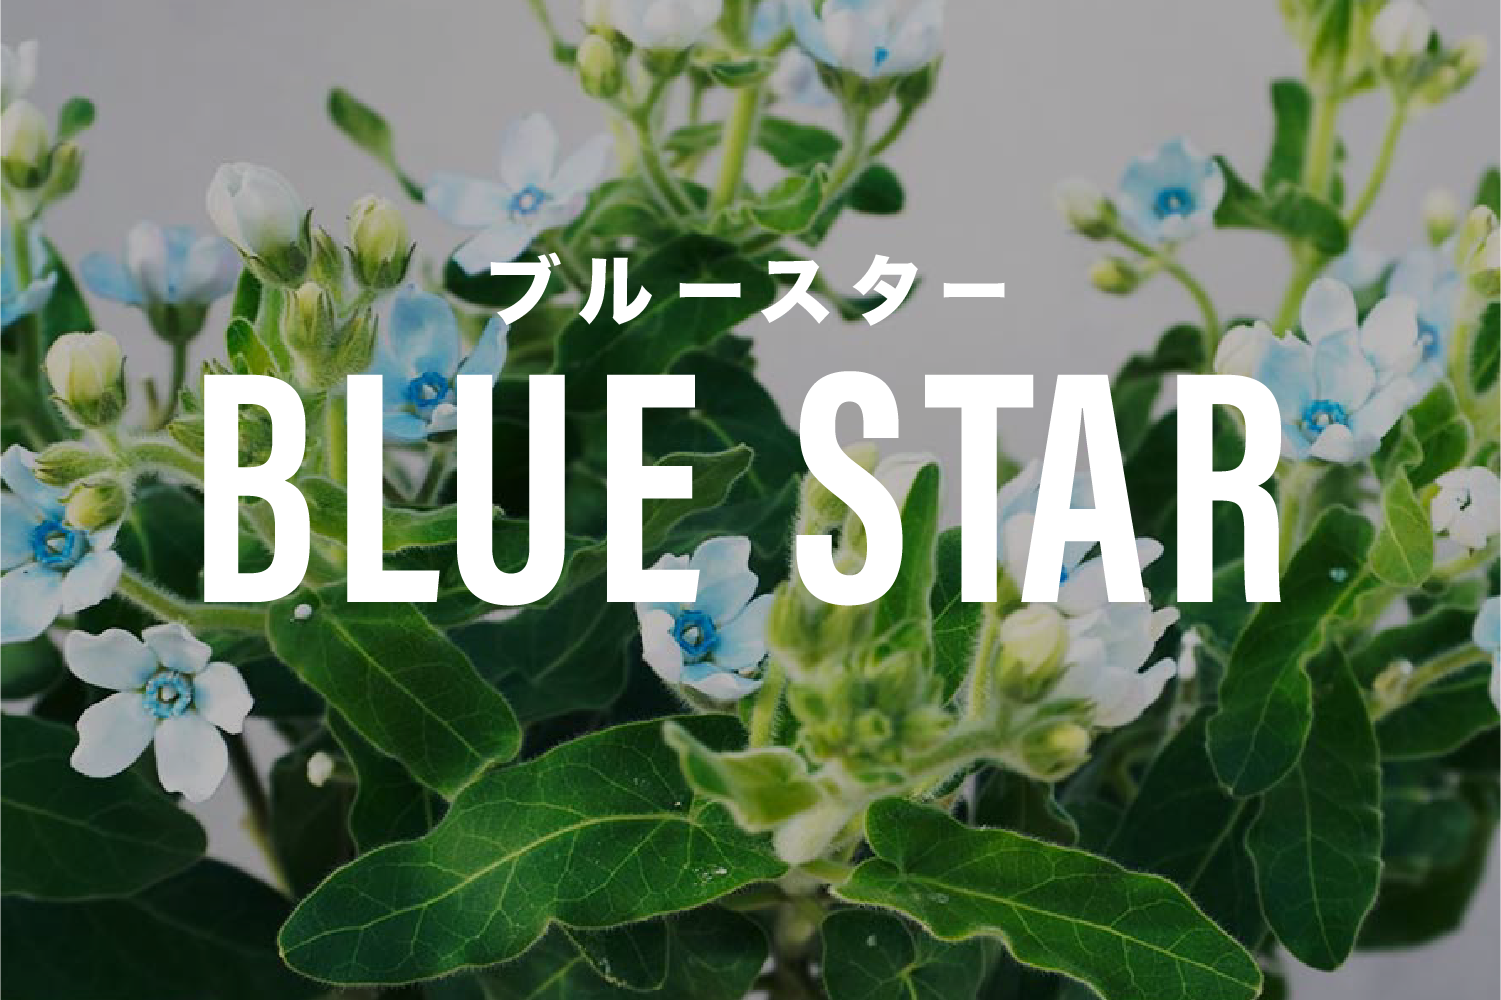 高知県が誇る星の形の花ブルースター